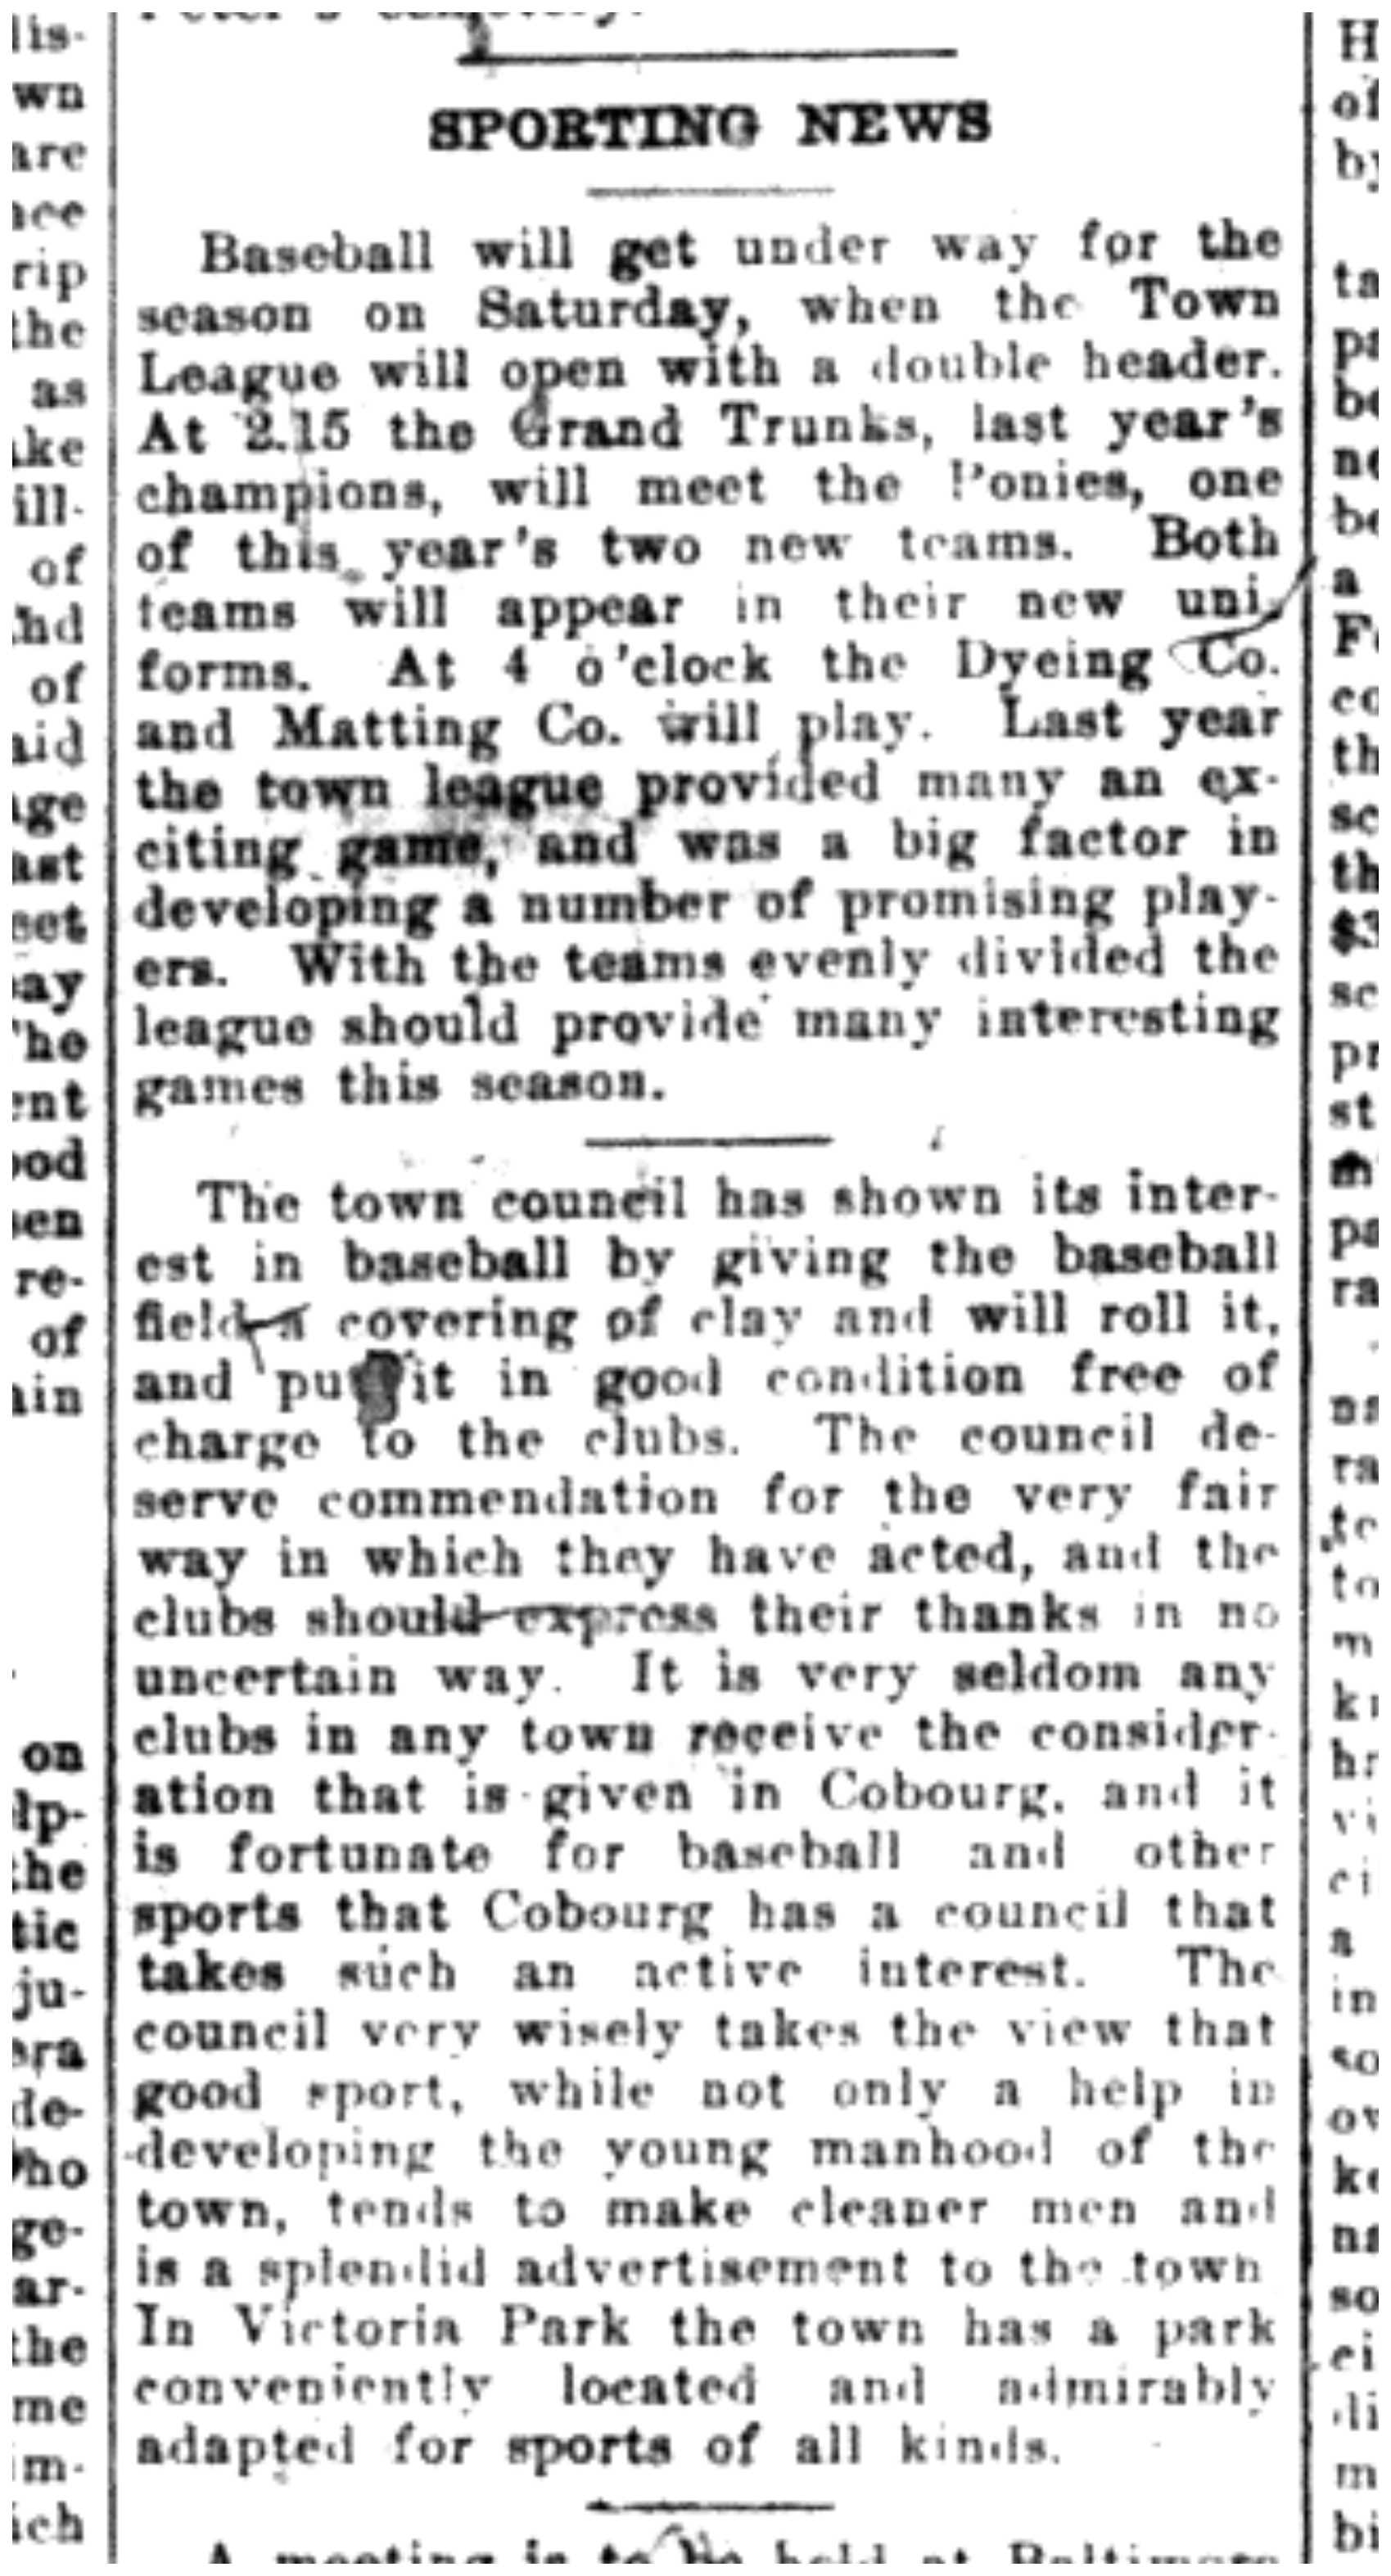 1921-05-05 Baseball -Town League